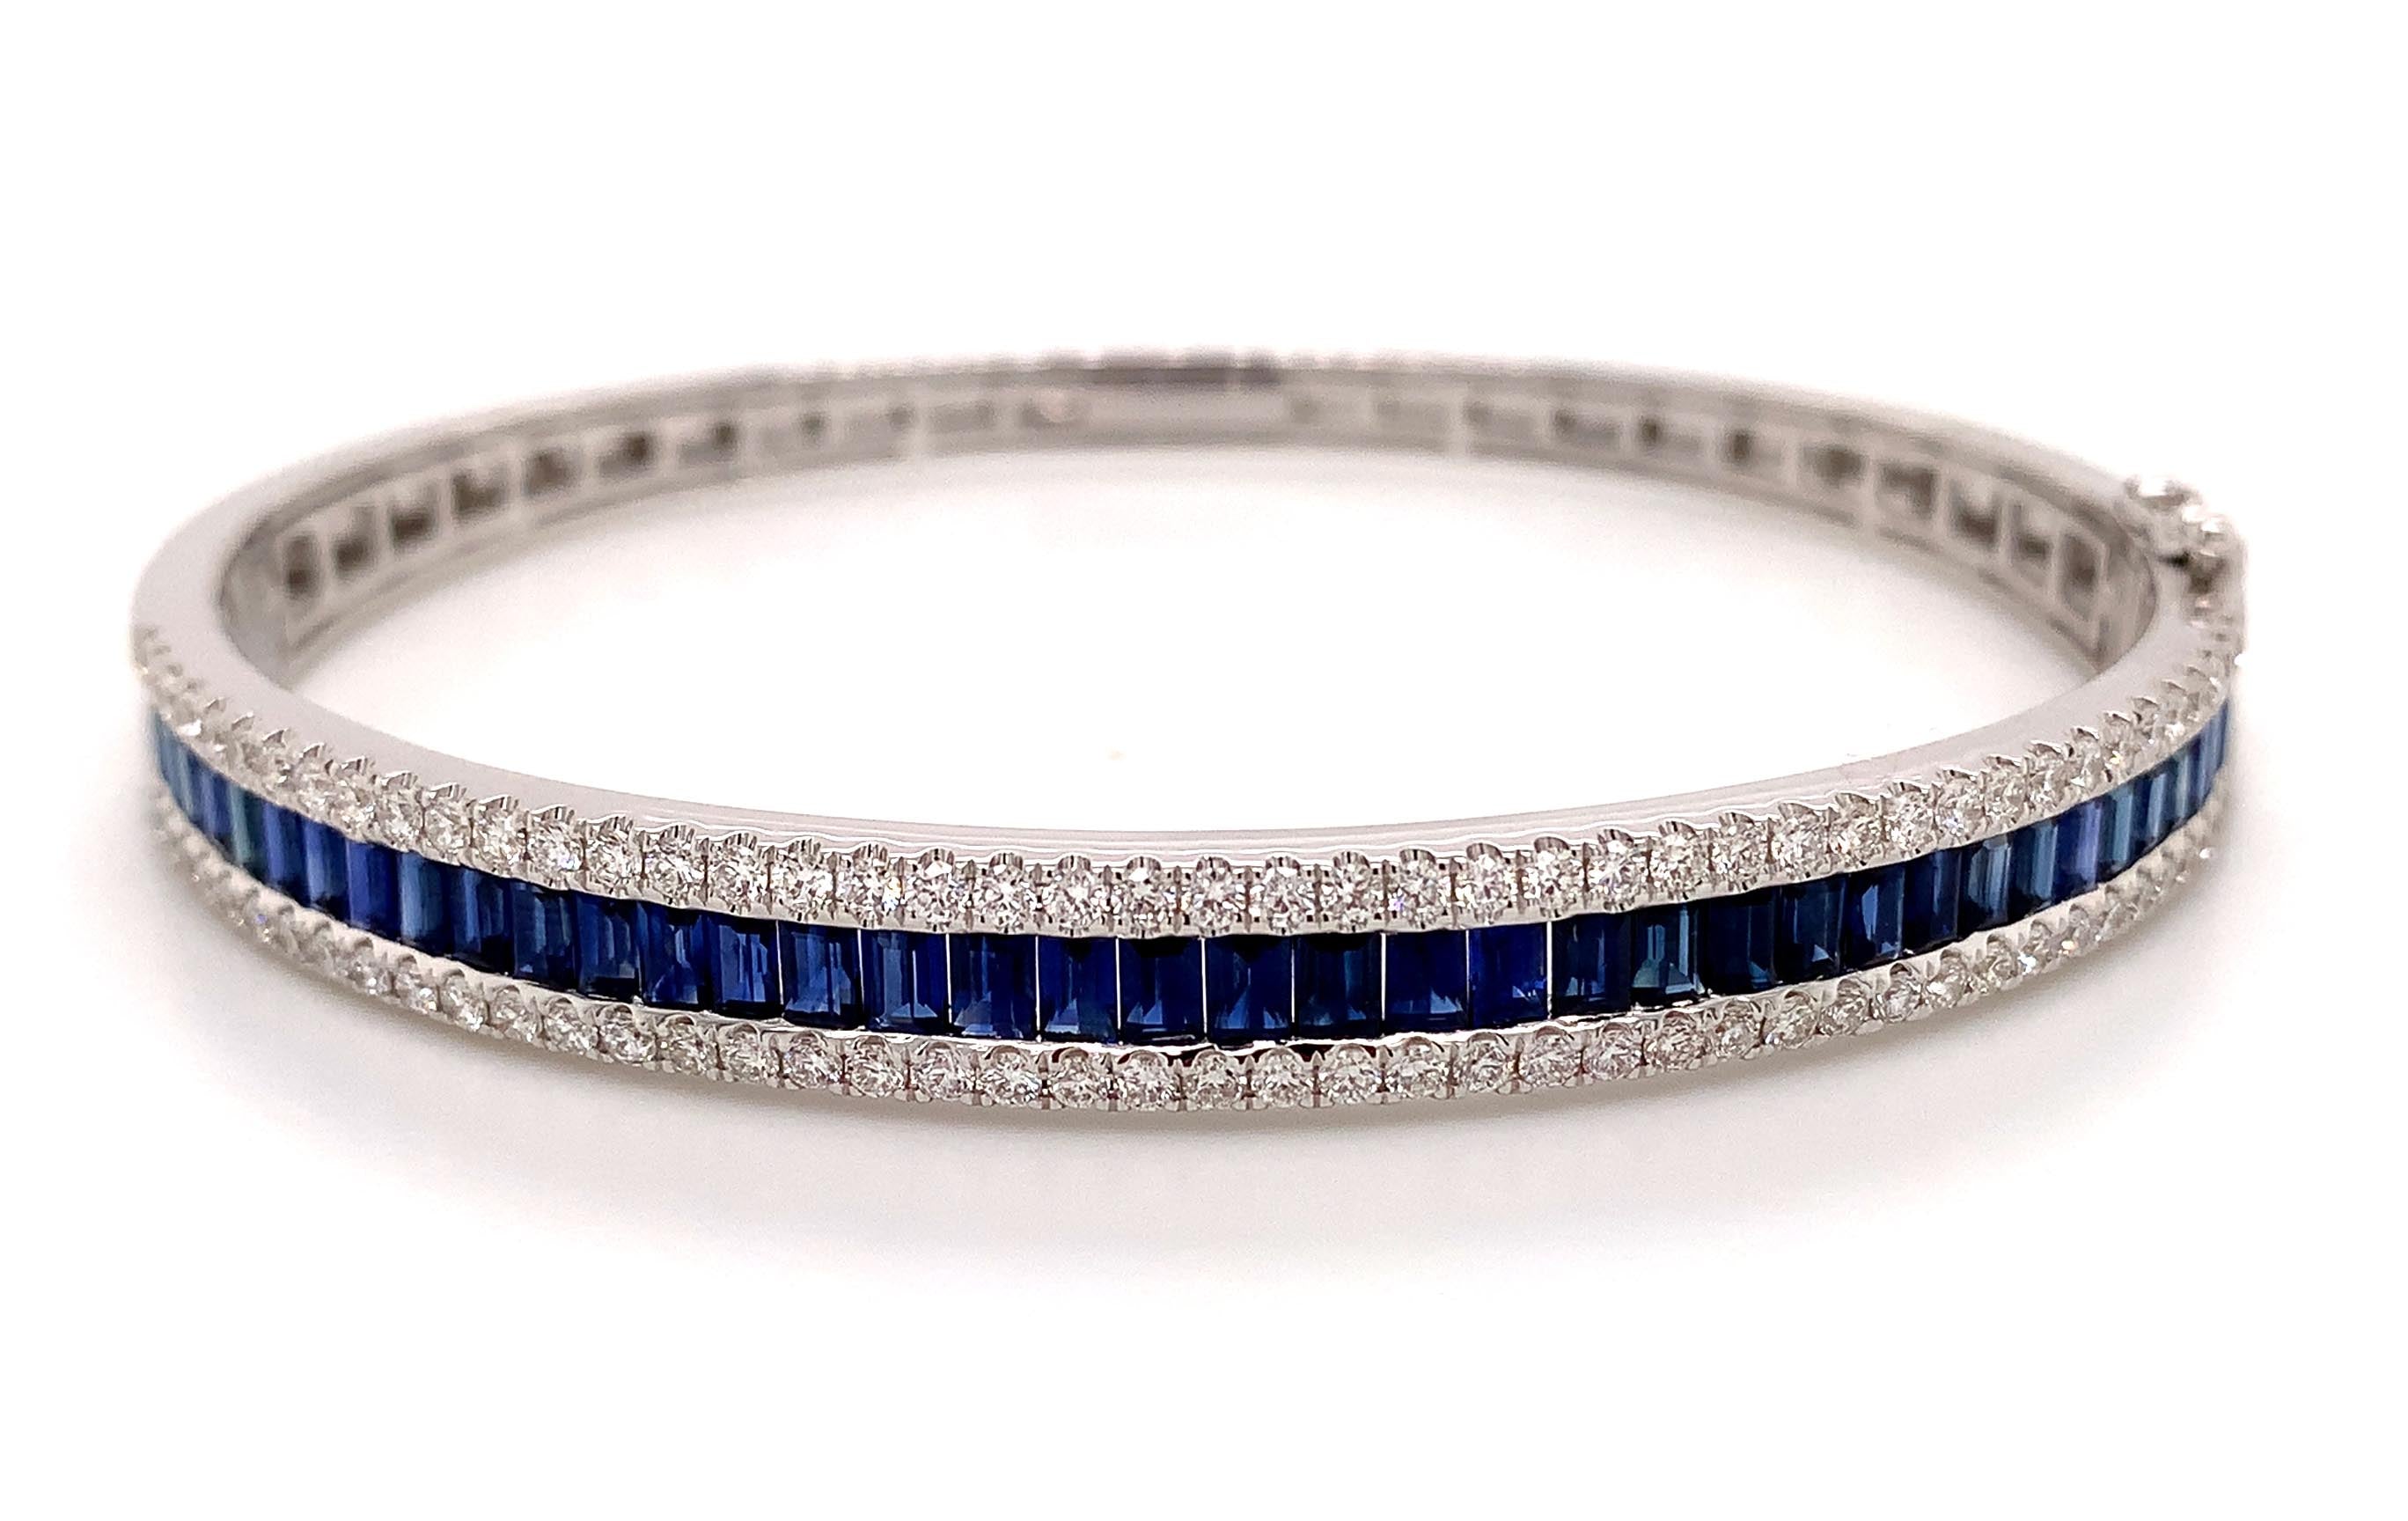 Simon G. Blue Sapphire & Diamond Butterfly Bracelet - 18K White Gold